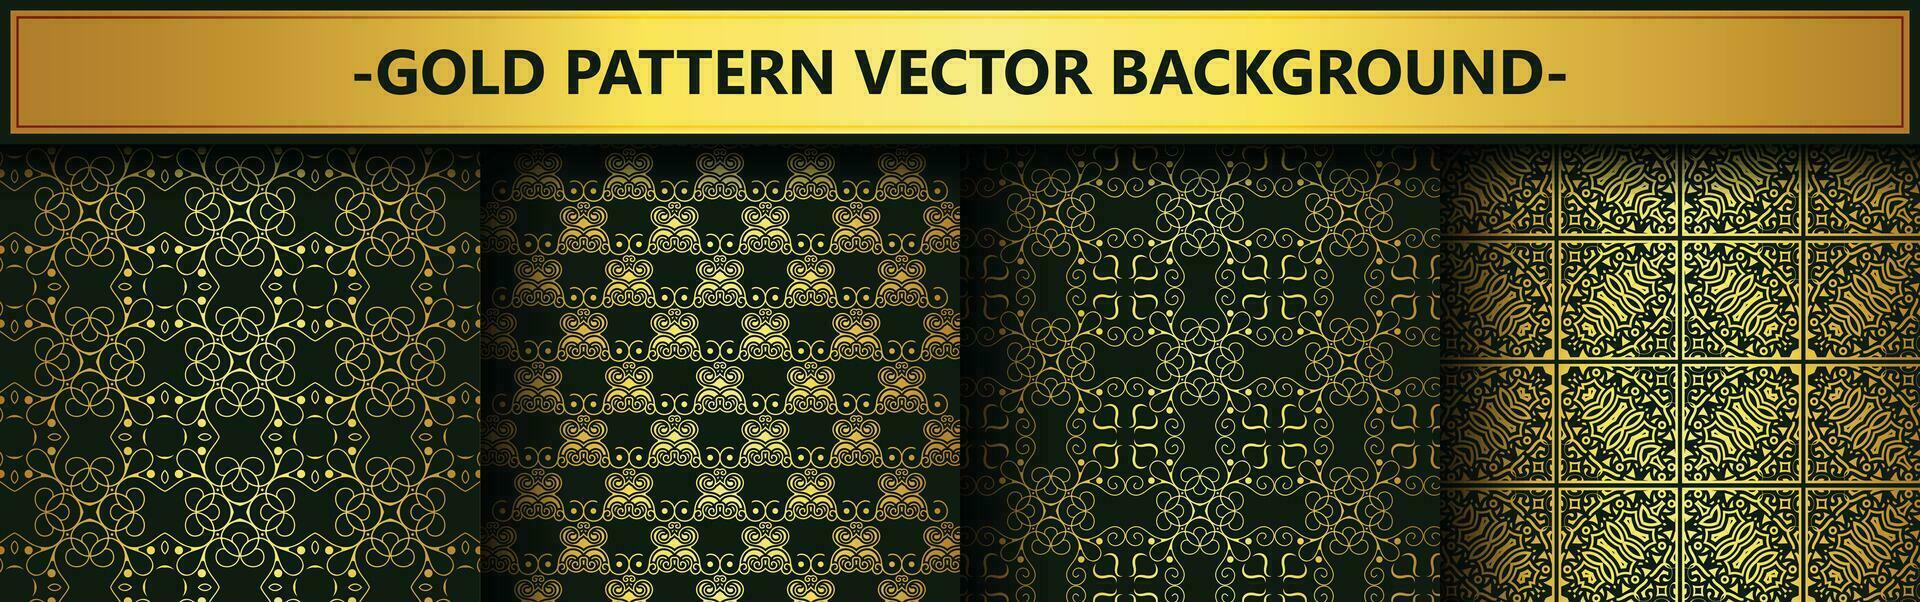 collectie goud en zwart naadloze patroon achtergrond vector